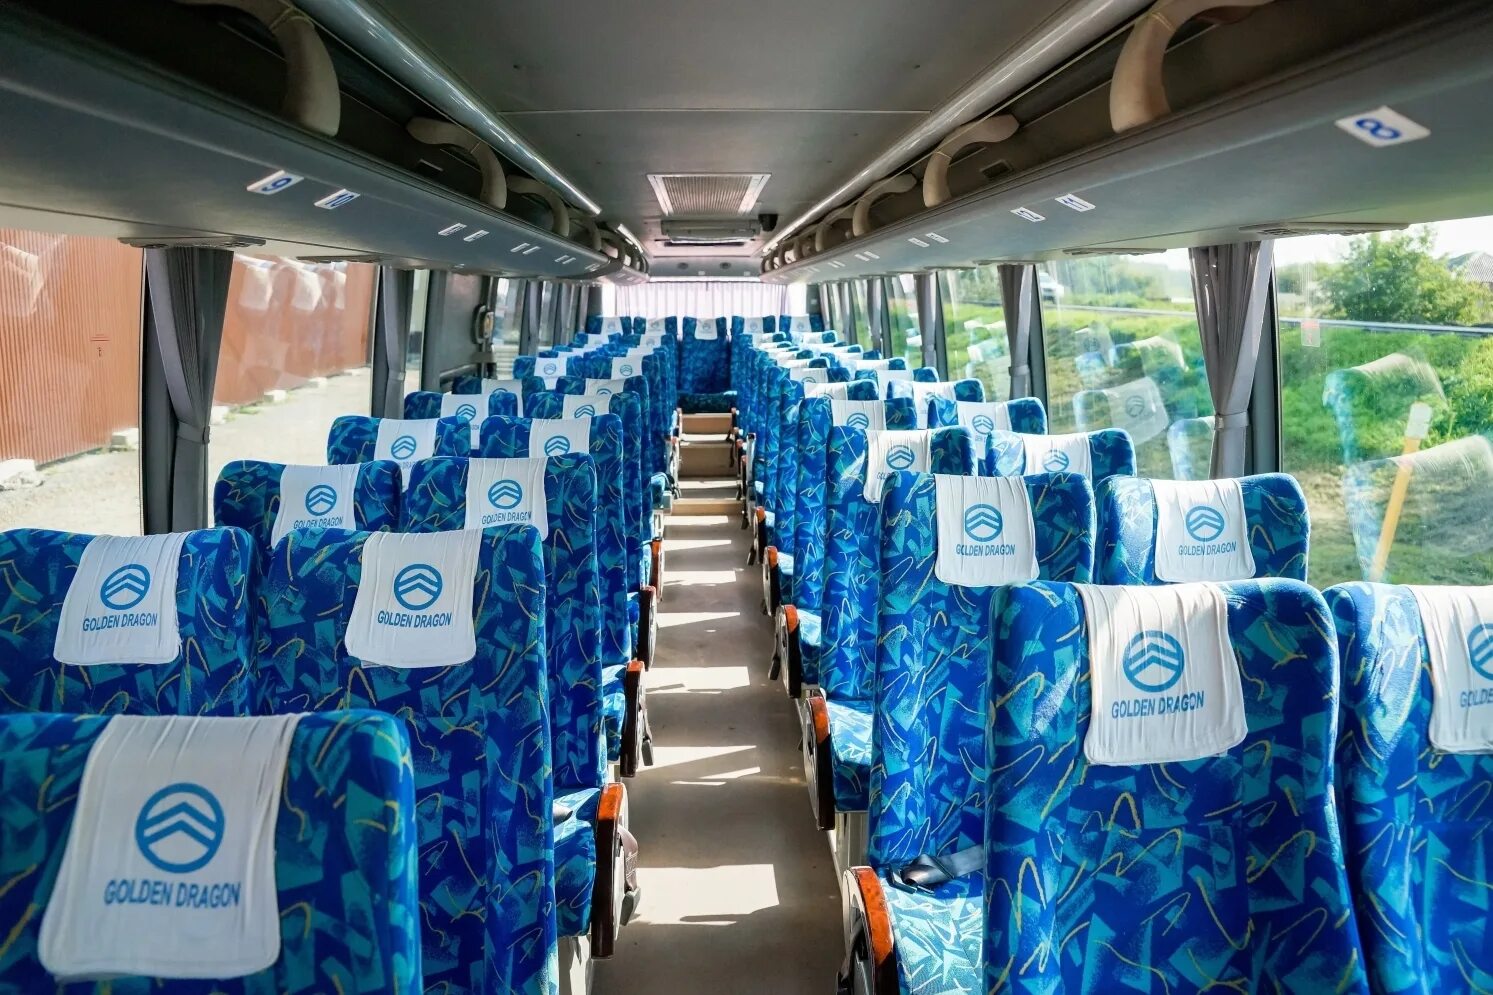 Новокузнецк новосибирск автобус купить. Golden Dragon (мест: 53). Голден драгон 6145 салон. Голден драгон автобус. Golden Dragon автобус туристический.